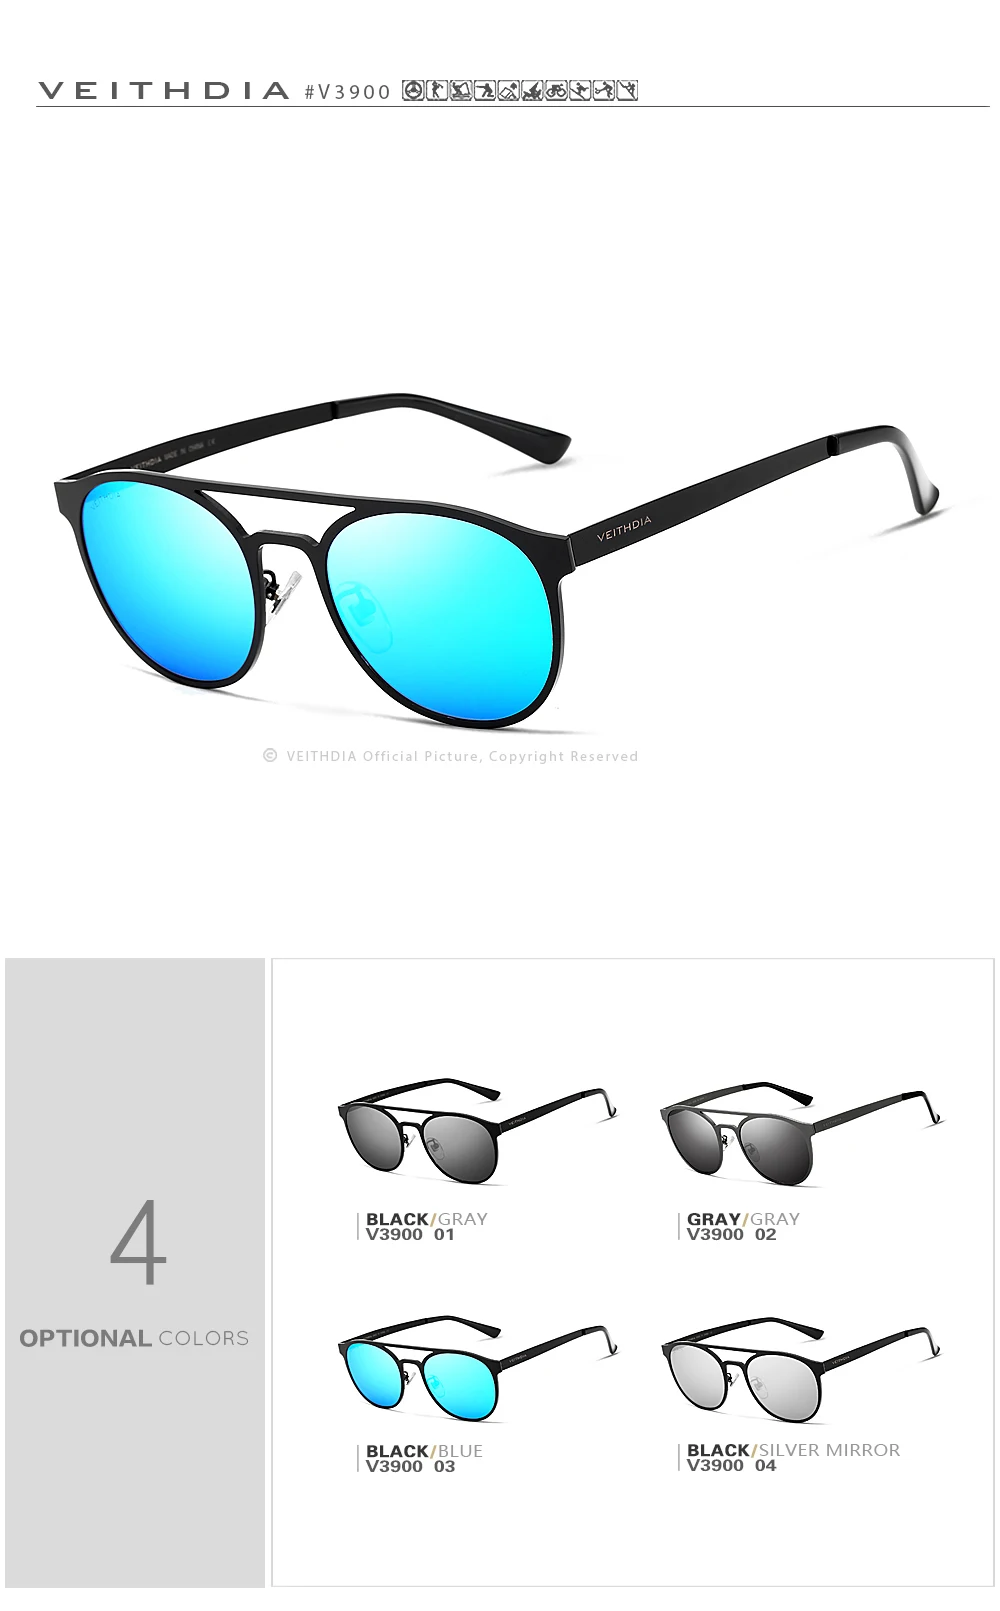 Солнцезащитные очки VEITHDIA унисекс из нержавеющей стали, поляризационные, UV400, мужские круглые винтажные солнцезащитные очки, мужские очки, аксессуары для мужчин 3900